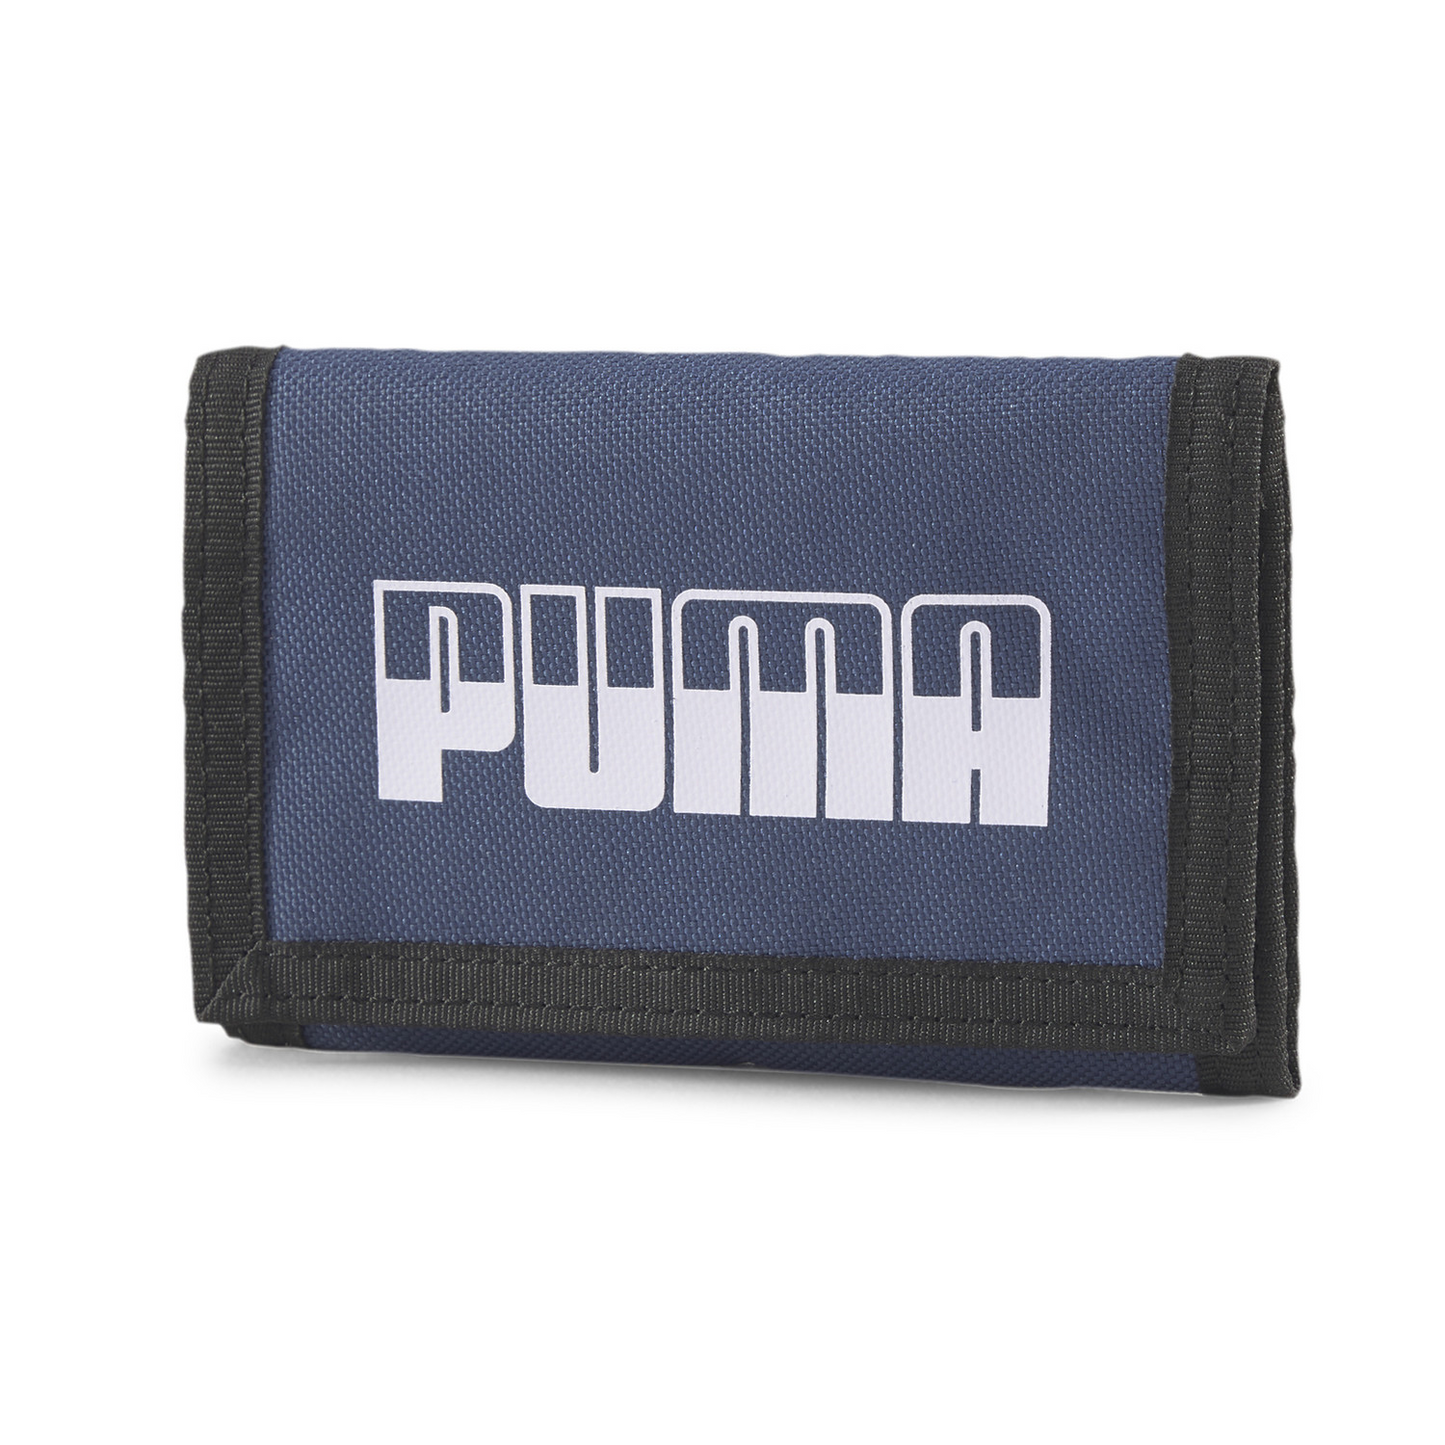 Puma plus wallet ii-053568 10